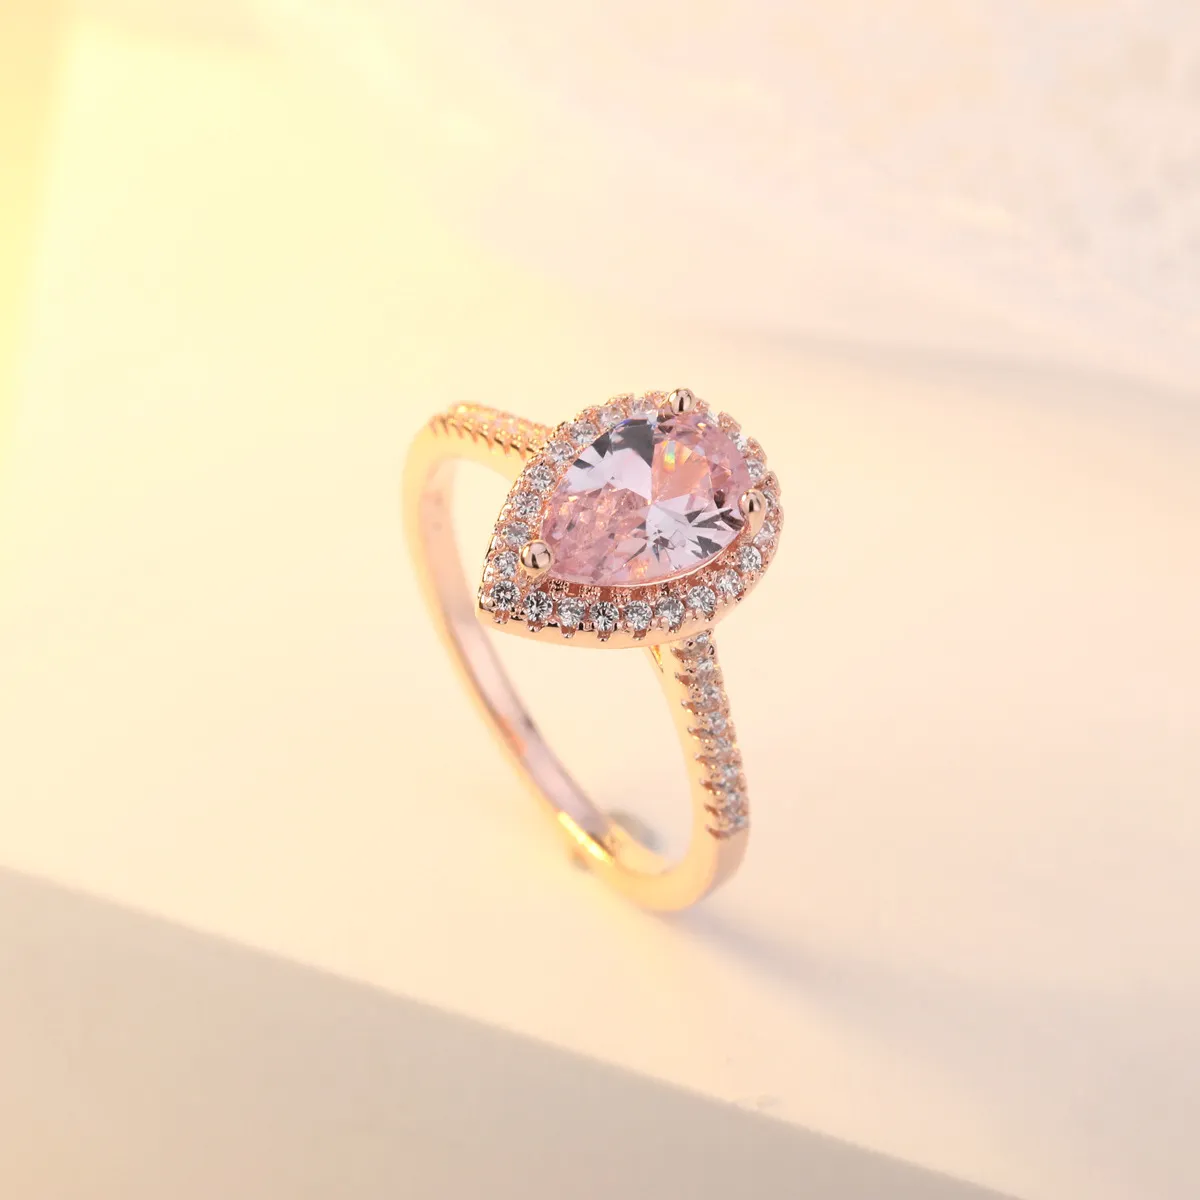 OMHXZJ Tutta la moda europea donna ragazza festa regalo di nozze goccia d'acqua rosa zircone bianco anello in oro rosa 18KT RR5989827737